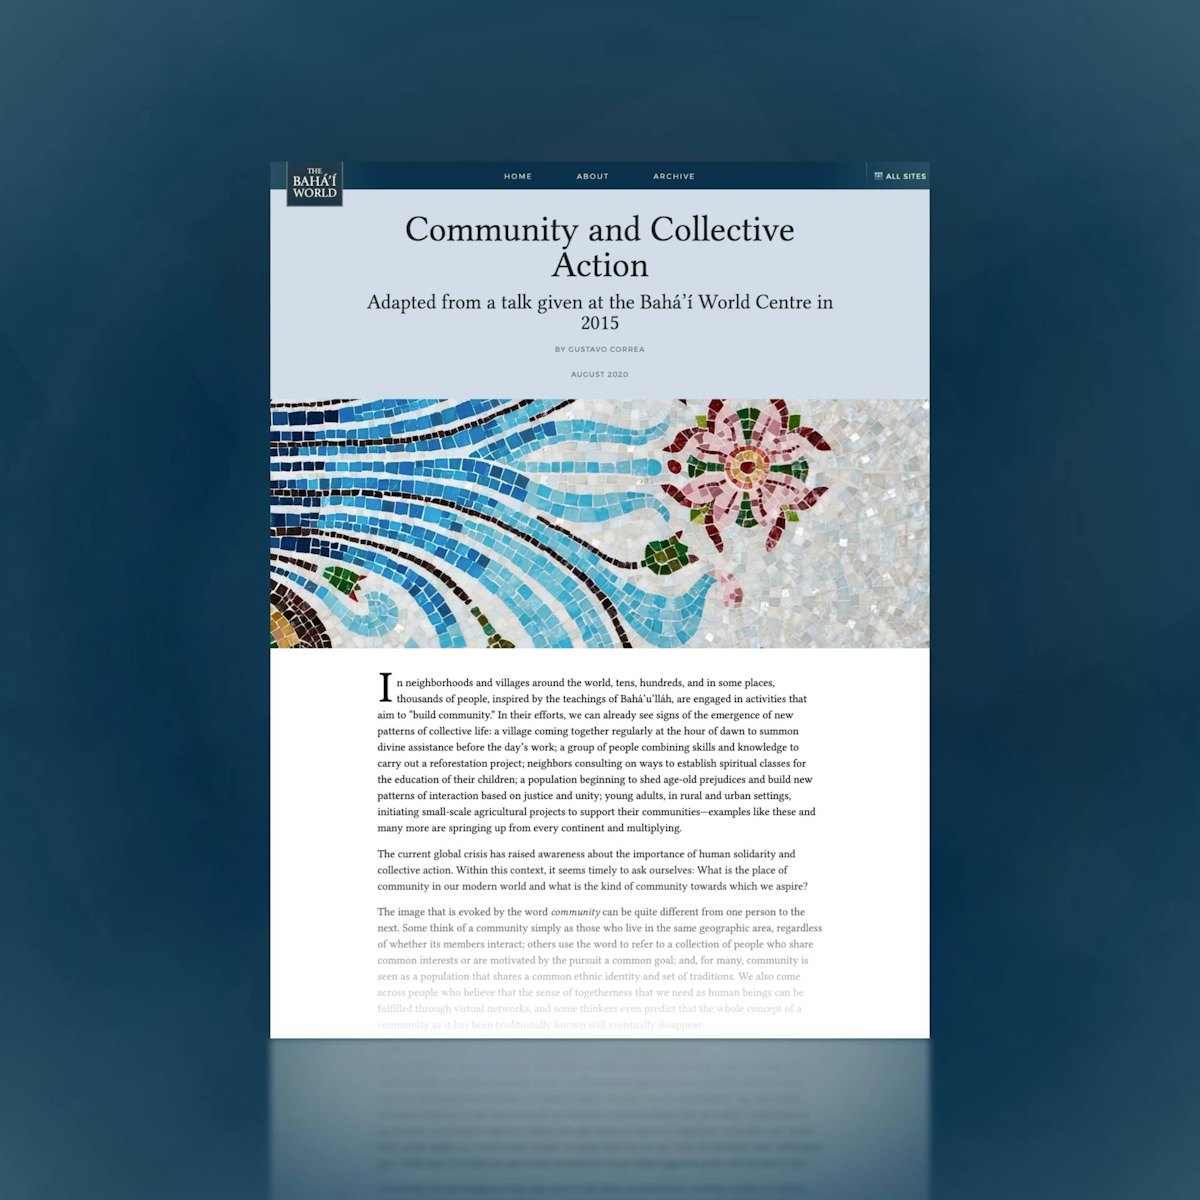 L’essai « Community and Collective Action » (Communauté et action collective) décrit les efforts pleins d’espoir de groupes de personnes du monde entier pour bâtir un nouveau type de communauté basée sur l’unité de l’humanité et décrit la vision et le processus qui guident ces efforts.